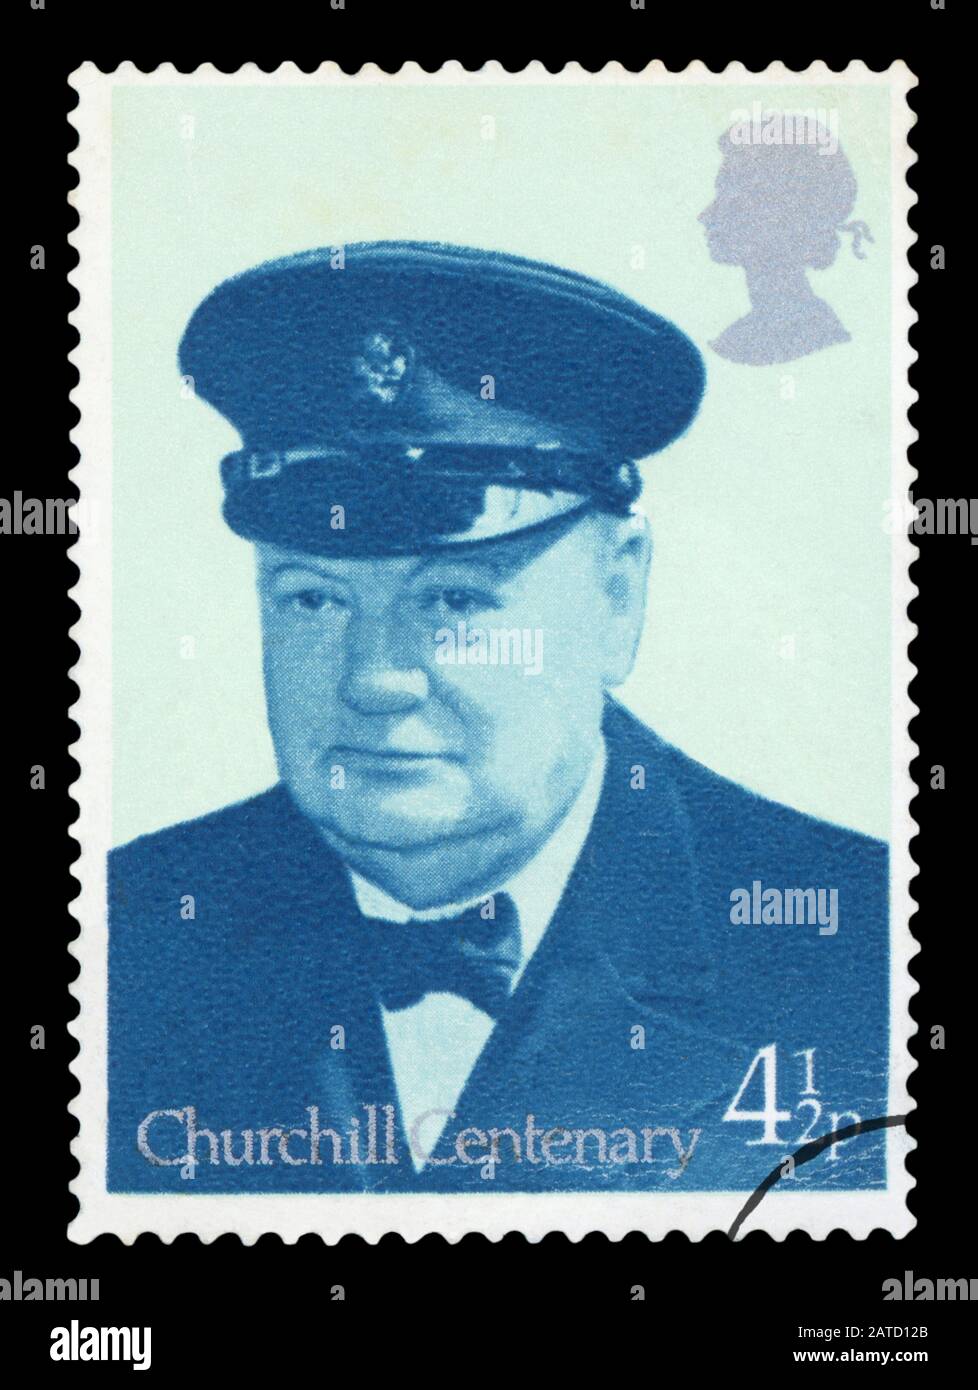 Großbritannien - CIRCA 1965: Eine in Großbritannien gedruckte gebrauchte Briefmarke zeigt ein Porträt des britischen Premierministers Sir Winston Churchill, etwa 1965. Stockfoto